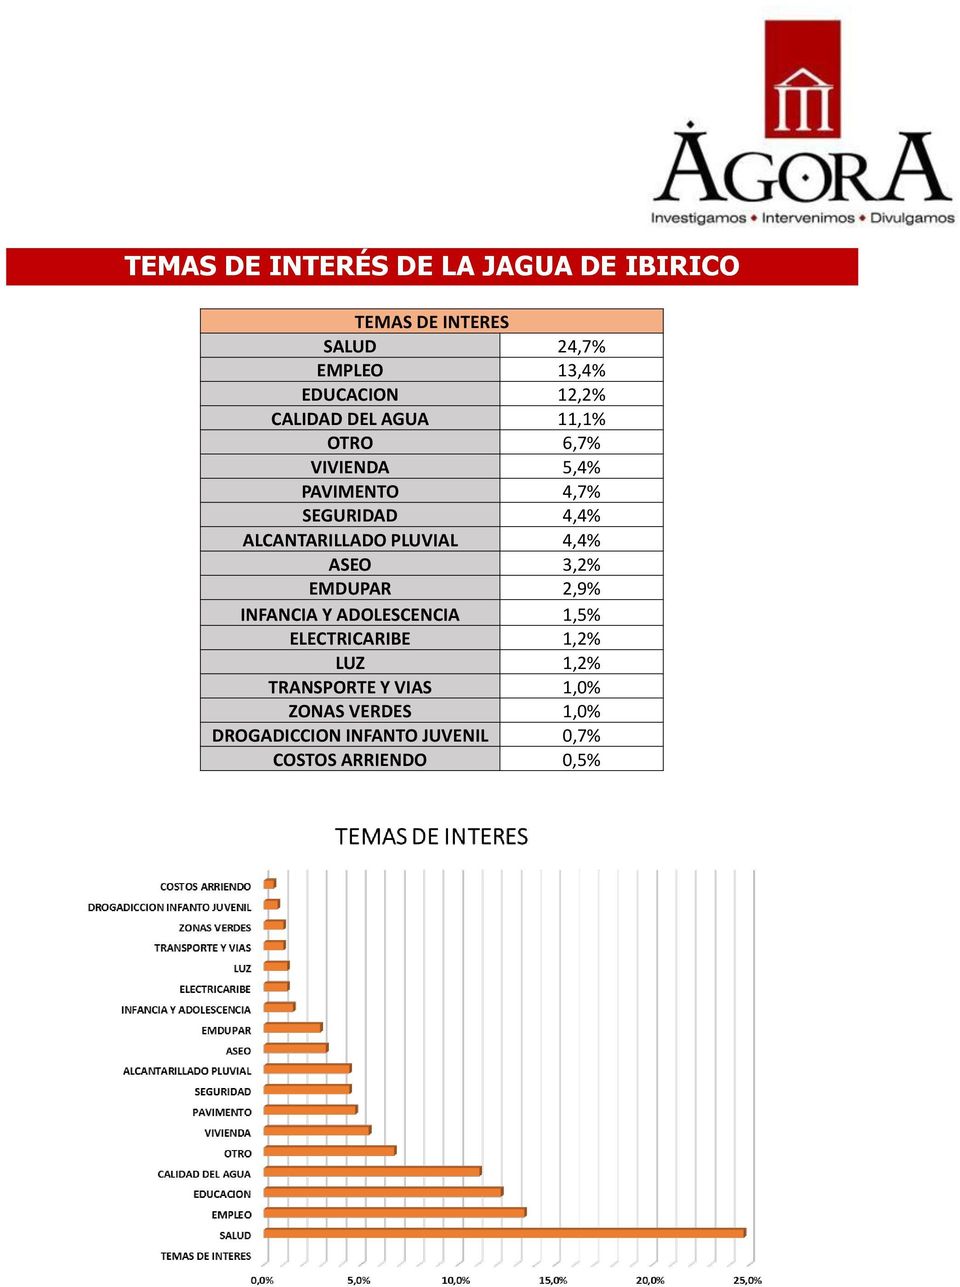 ALCANTARILLADO PLUVIAL 4,4% ASEO 3,2% EMDUPAR 2,9% INFANCIA Y ADOLESCENCIA 1,5% ELECTRICARIBE